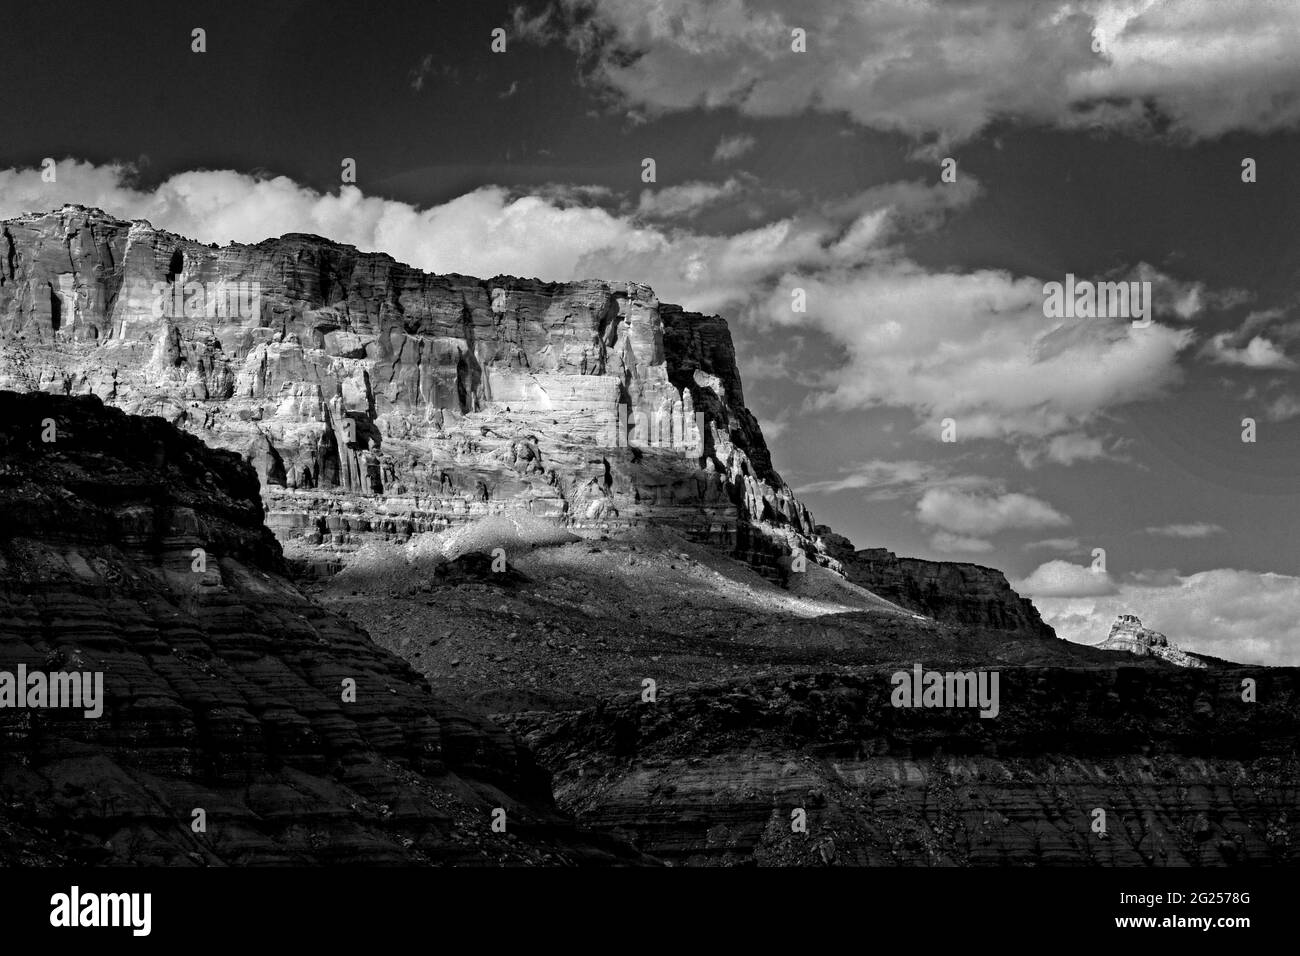 Image claire et nette en noir et blanc des nuages, d'un canyon, d'une falaise et d'une Mesa plate. Des contrastes nets entre les noirs et les blancs. Belle image Banque D'Images